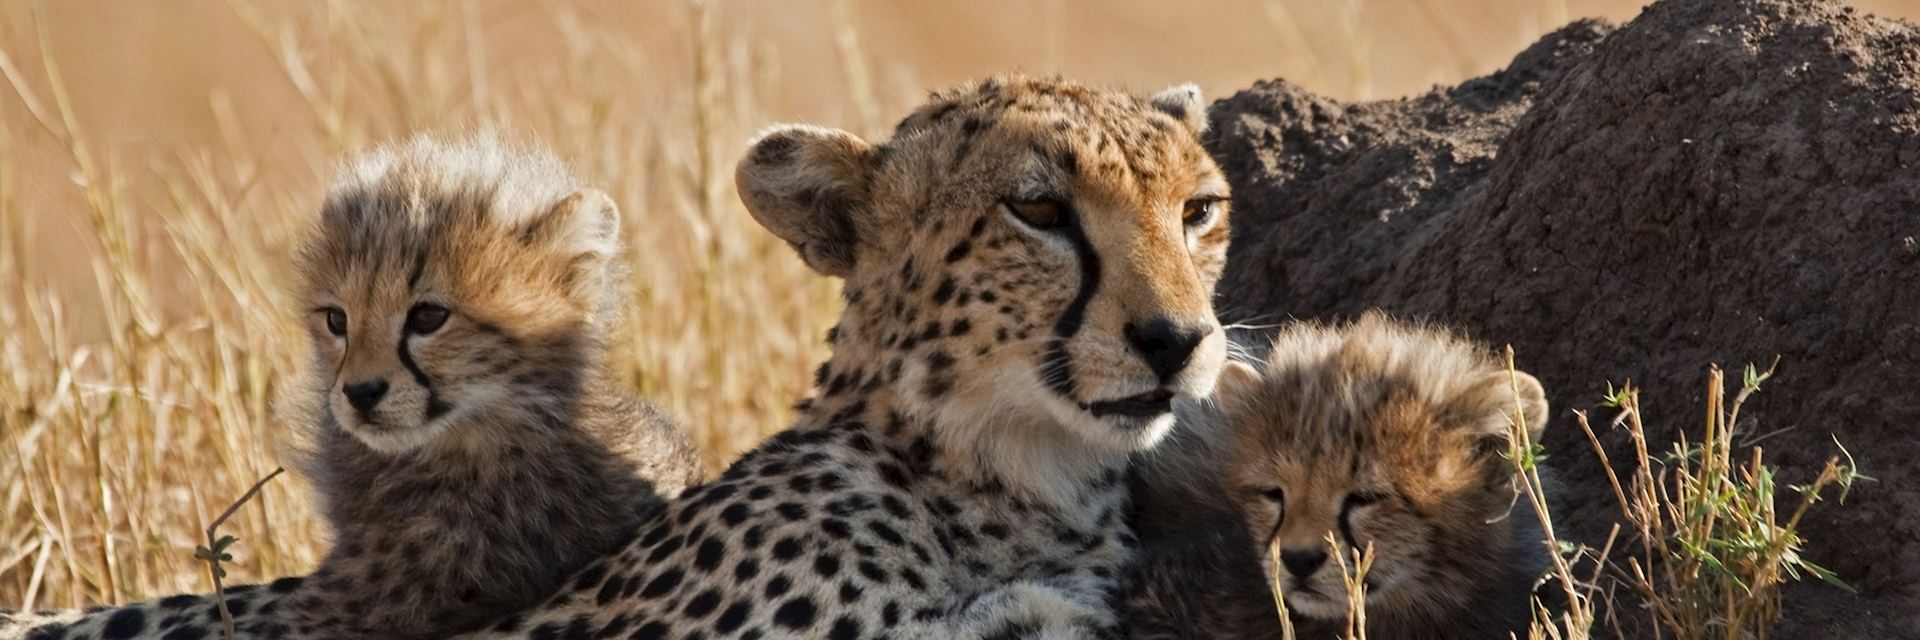 Cheetah in the Masai Mara National Park